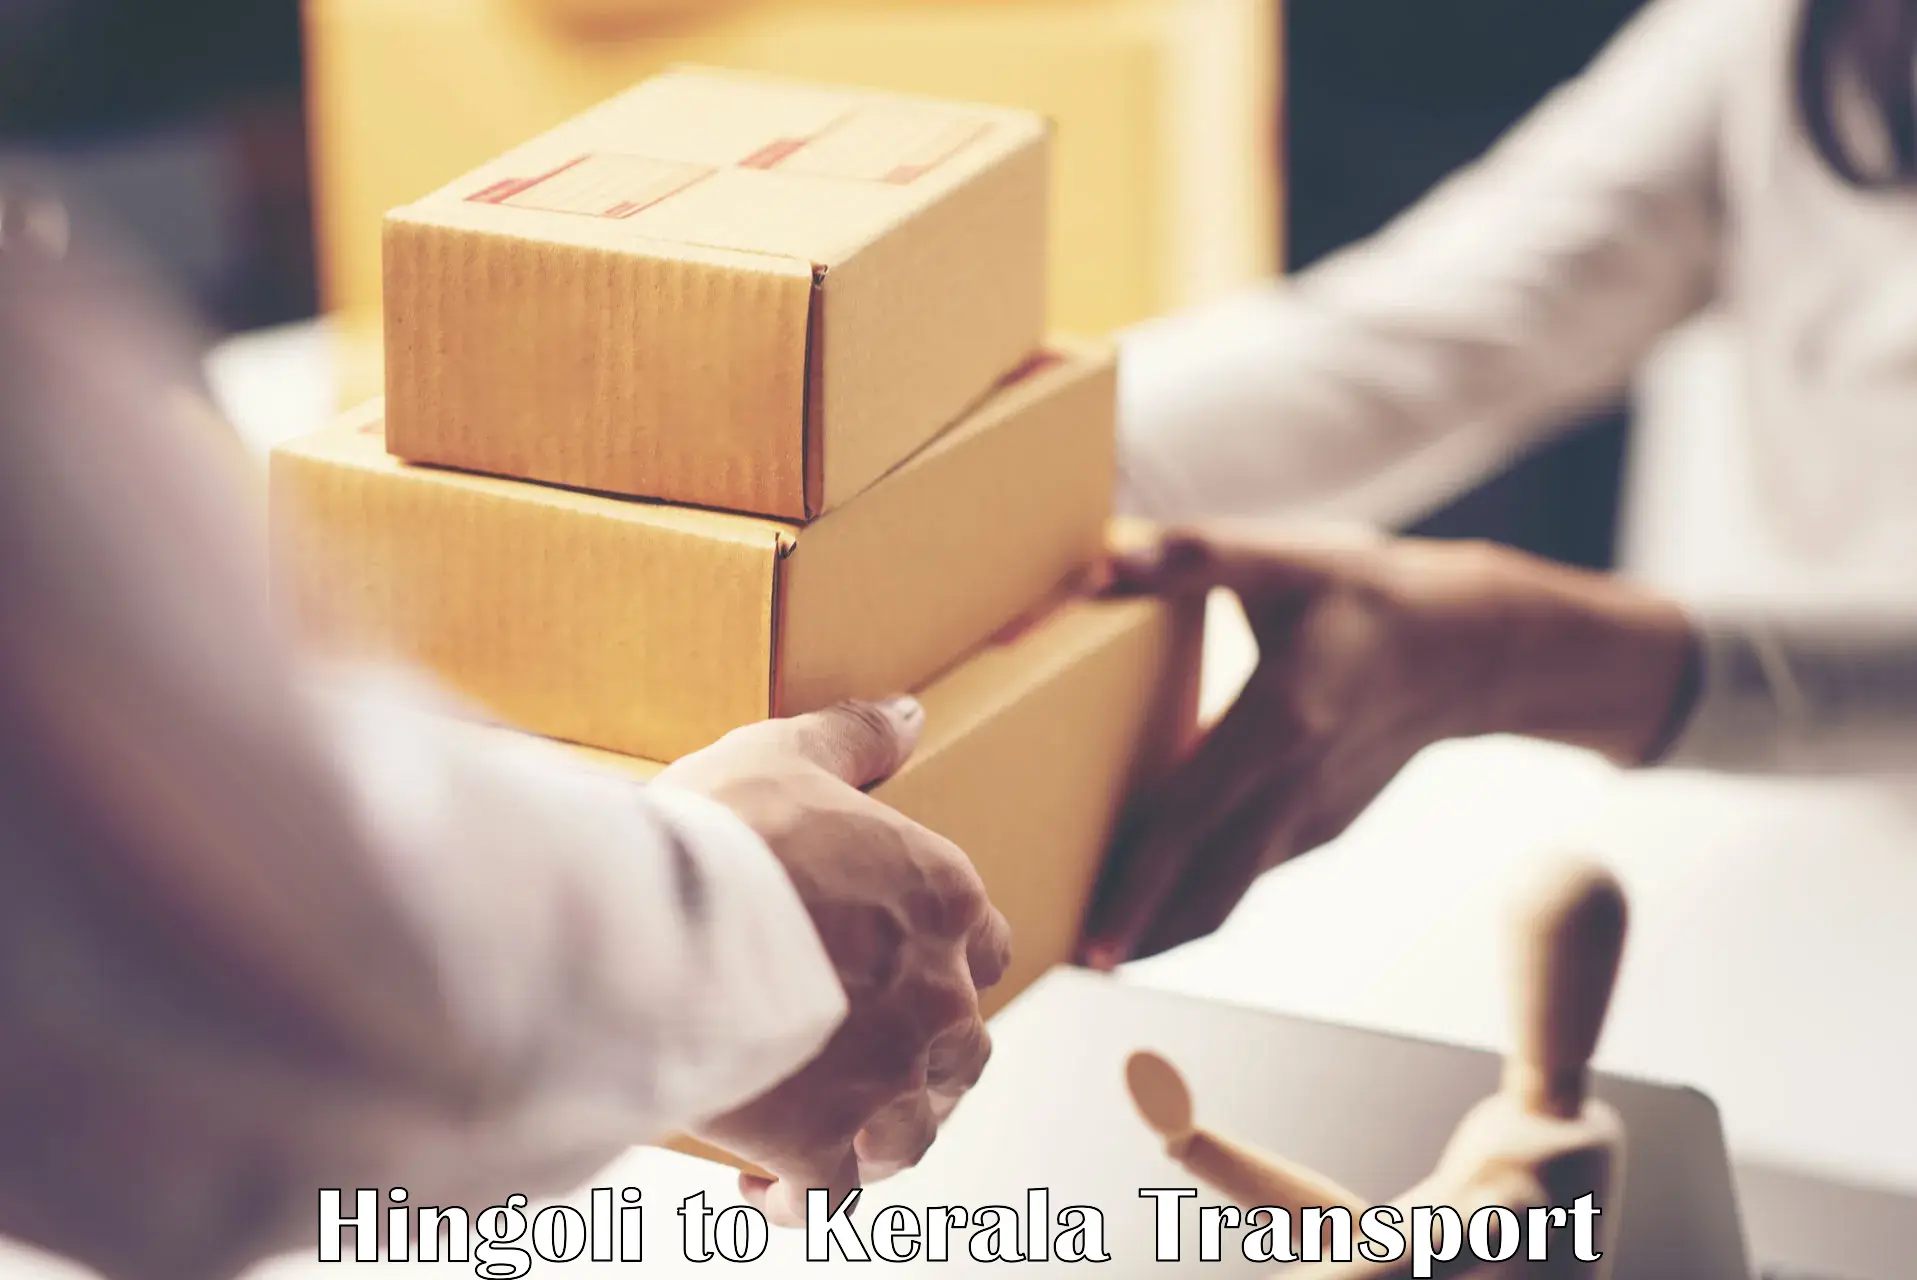 Shipping services Hingoli to Kakkur